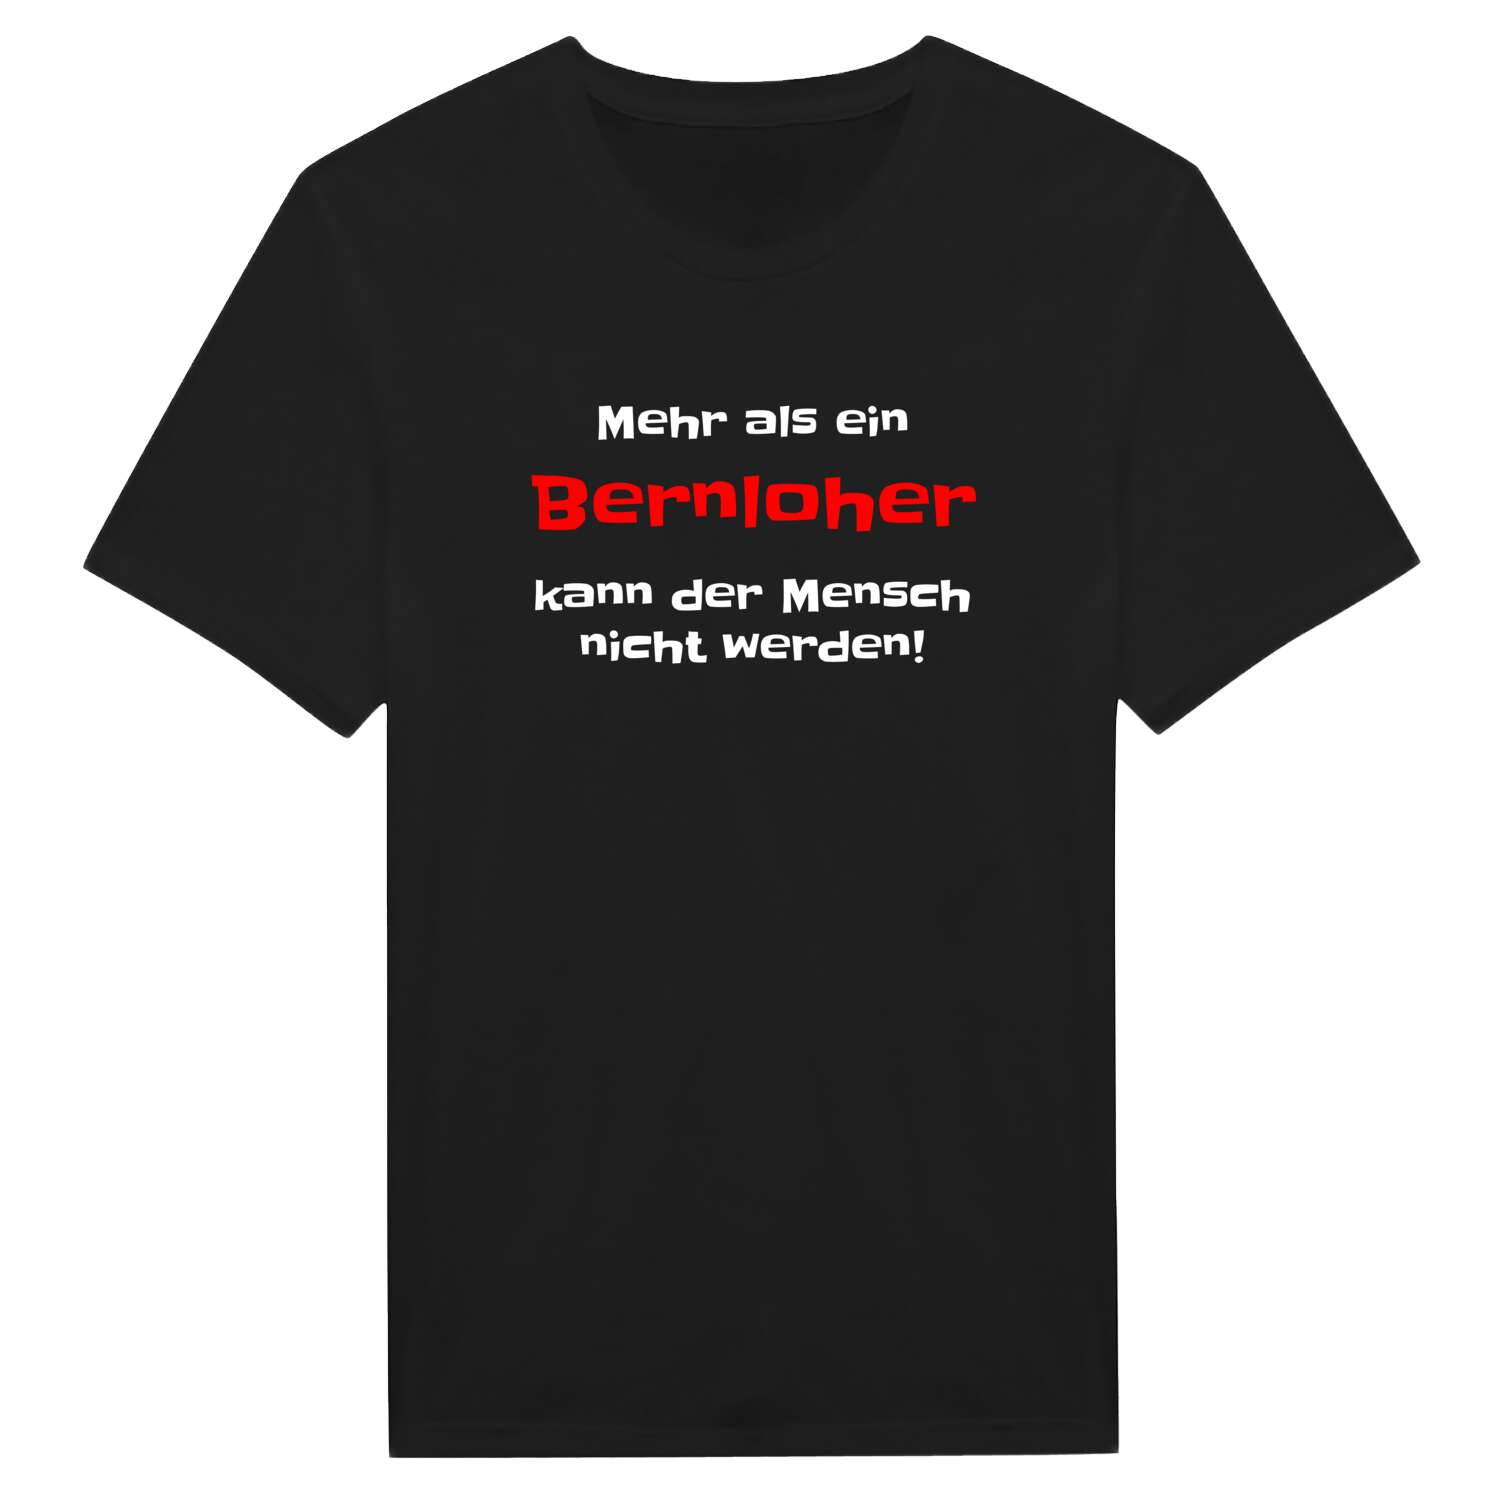 Bernloh T-Shirt »Mehr als ein«